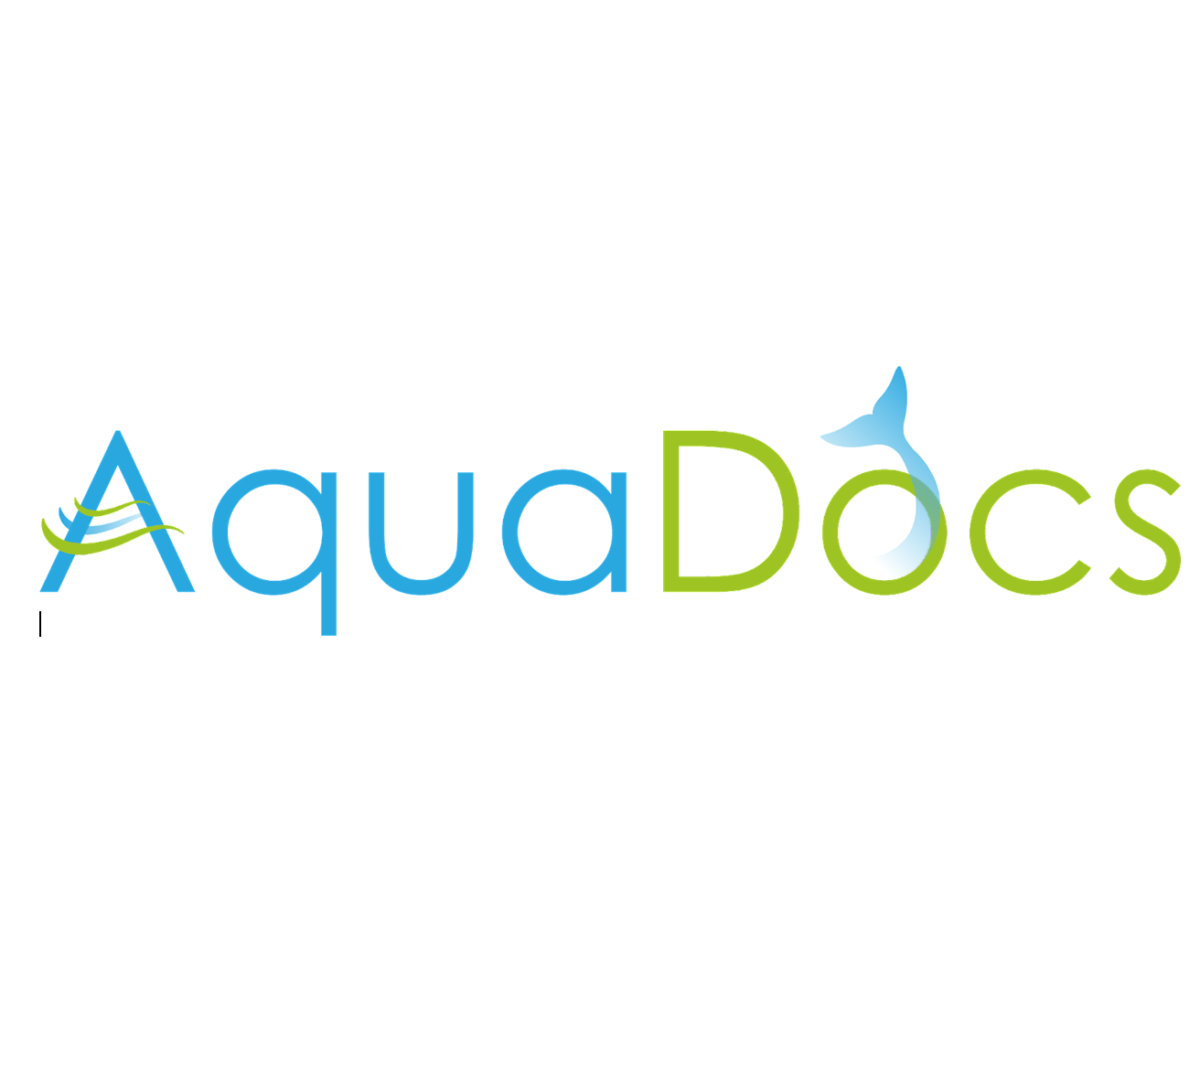 Introducing AquaDocs – a joint open access publications repository